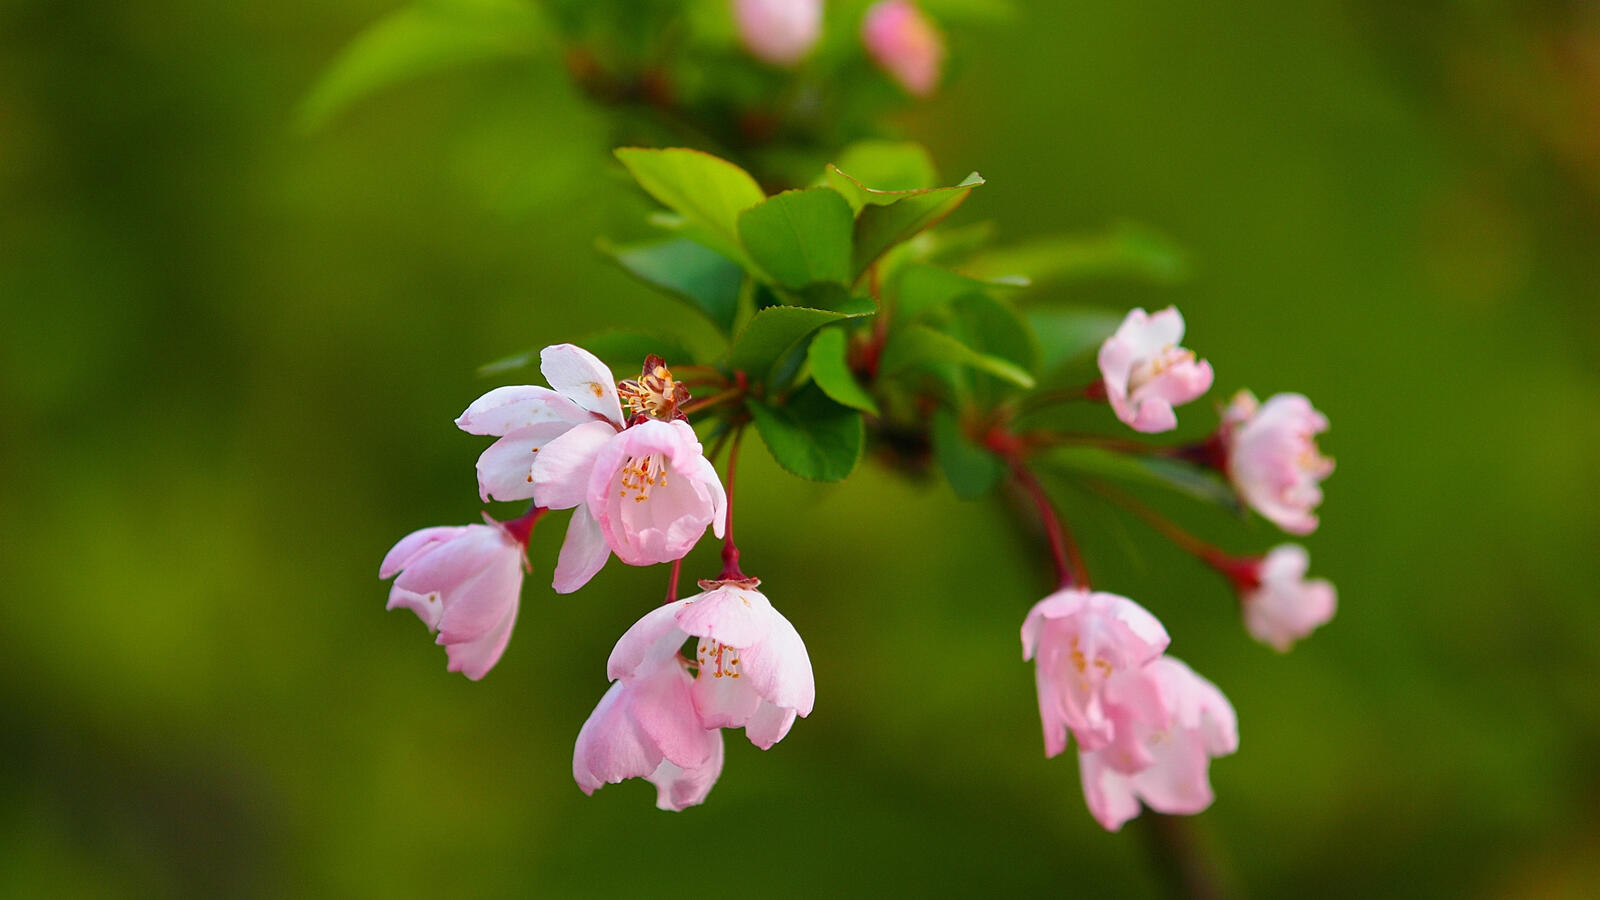 Бесплатное фото Маленькие розовые цветочки на ветке с зелеными листьями